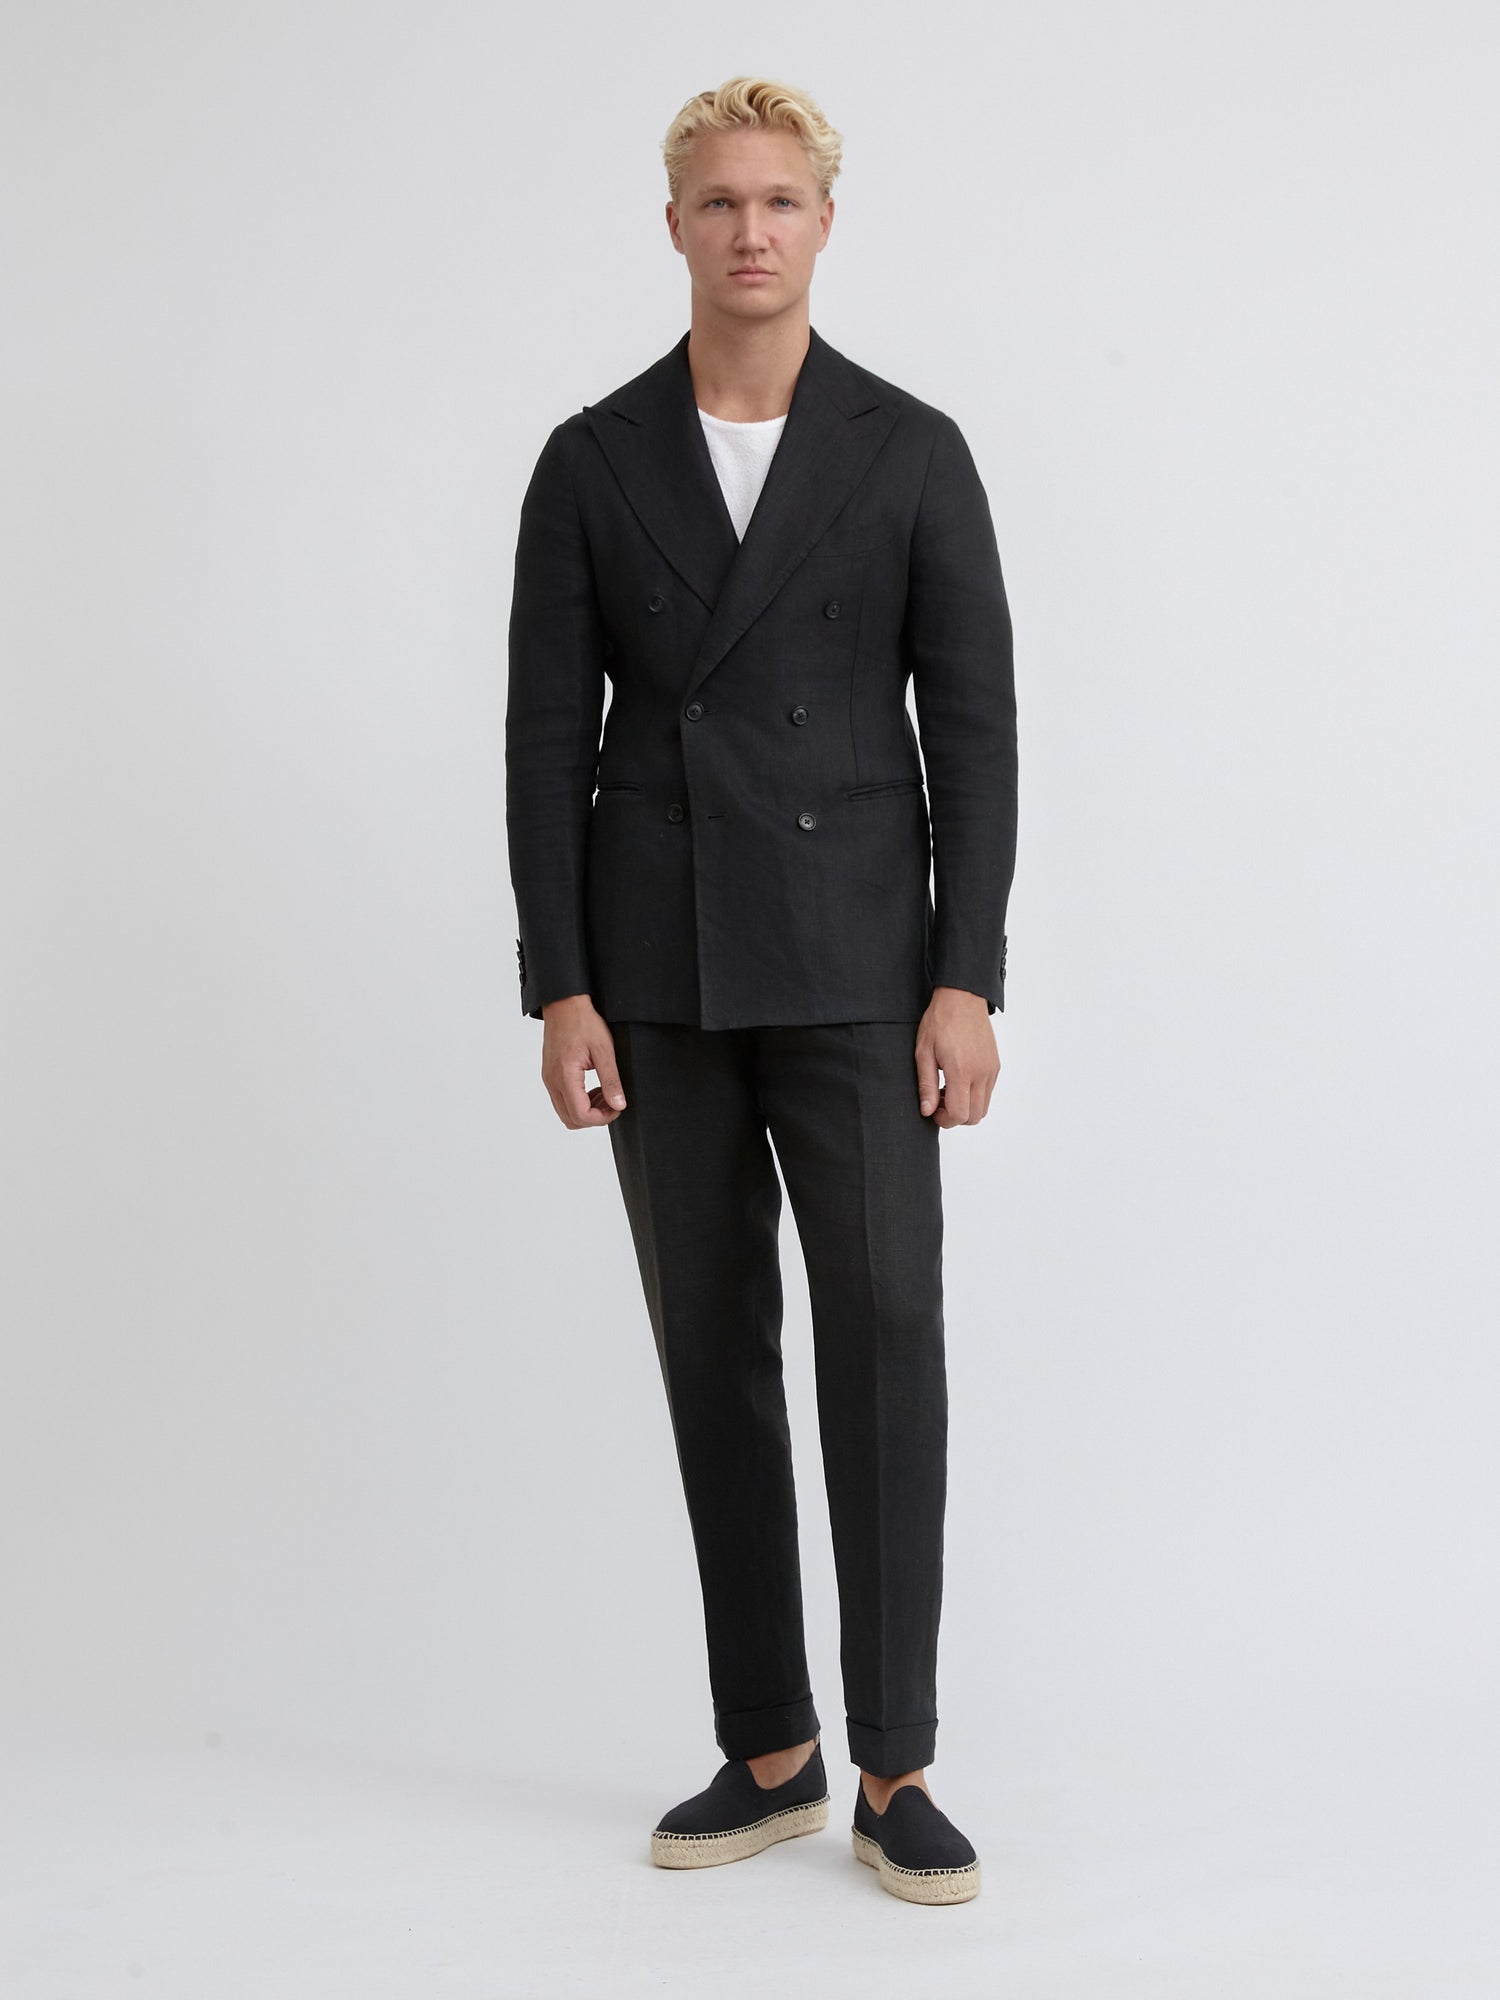 Black Linen Suit - Grand Le Mar